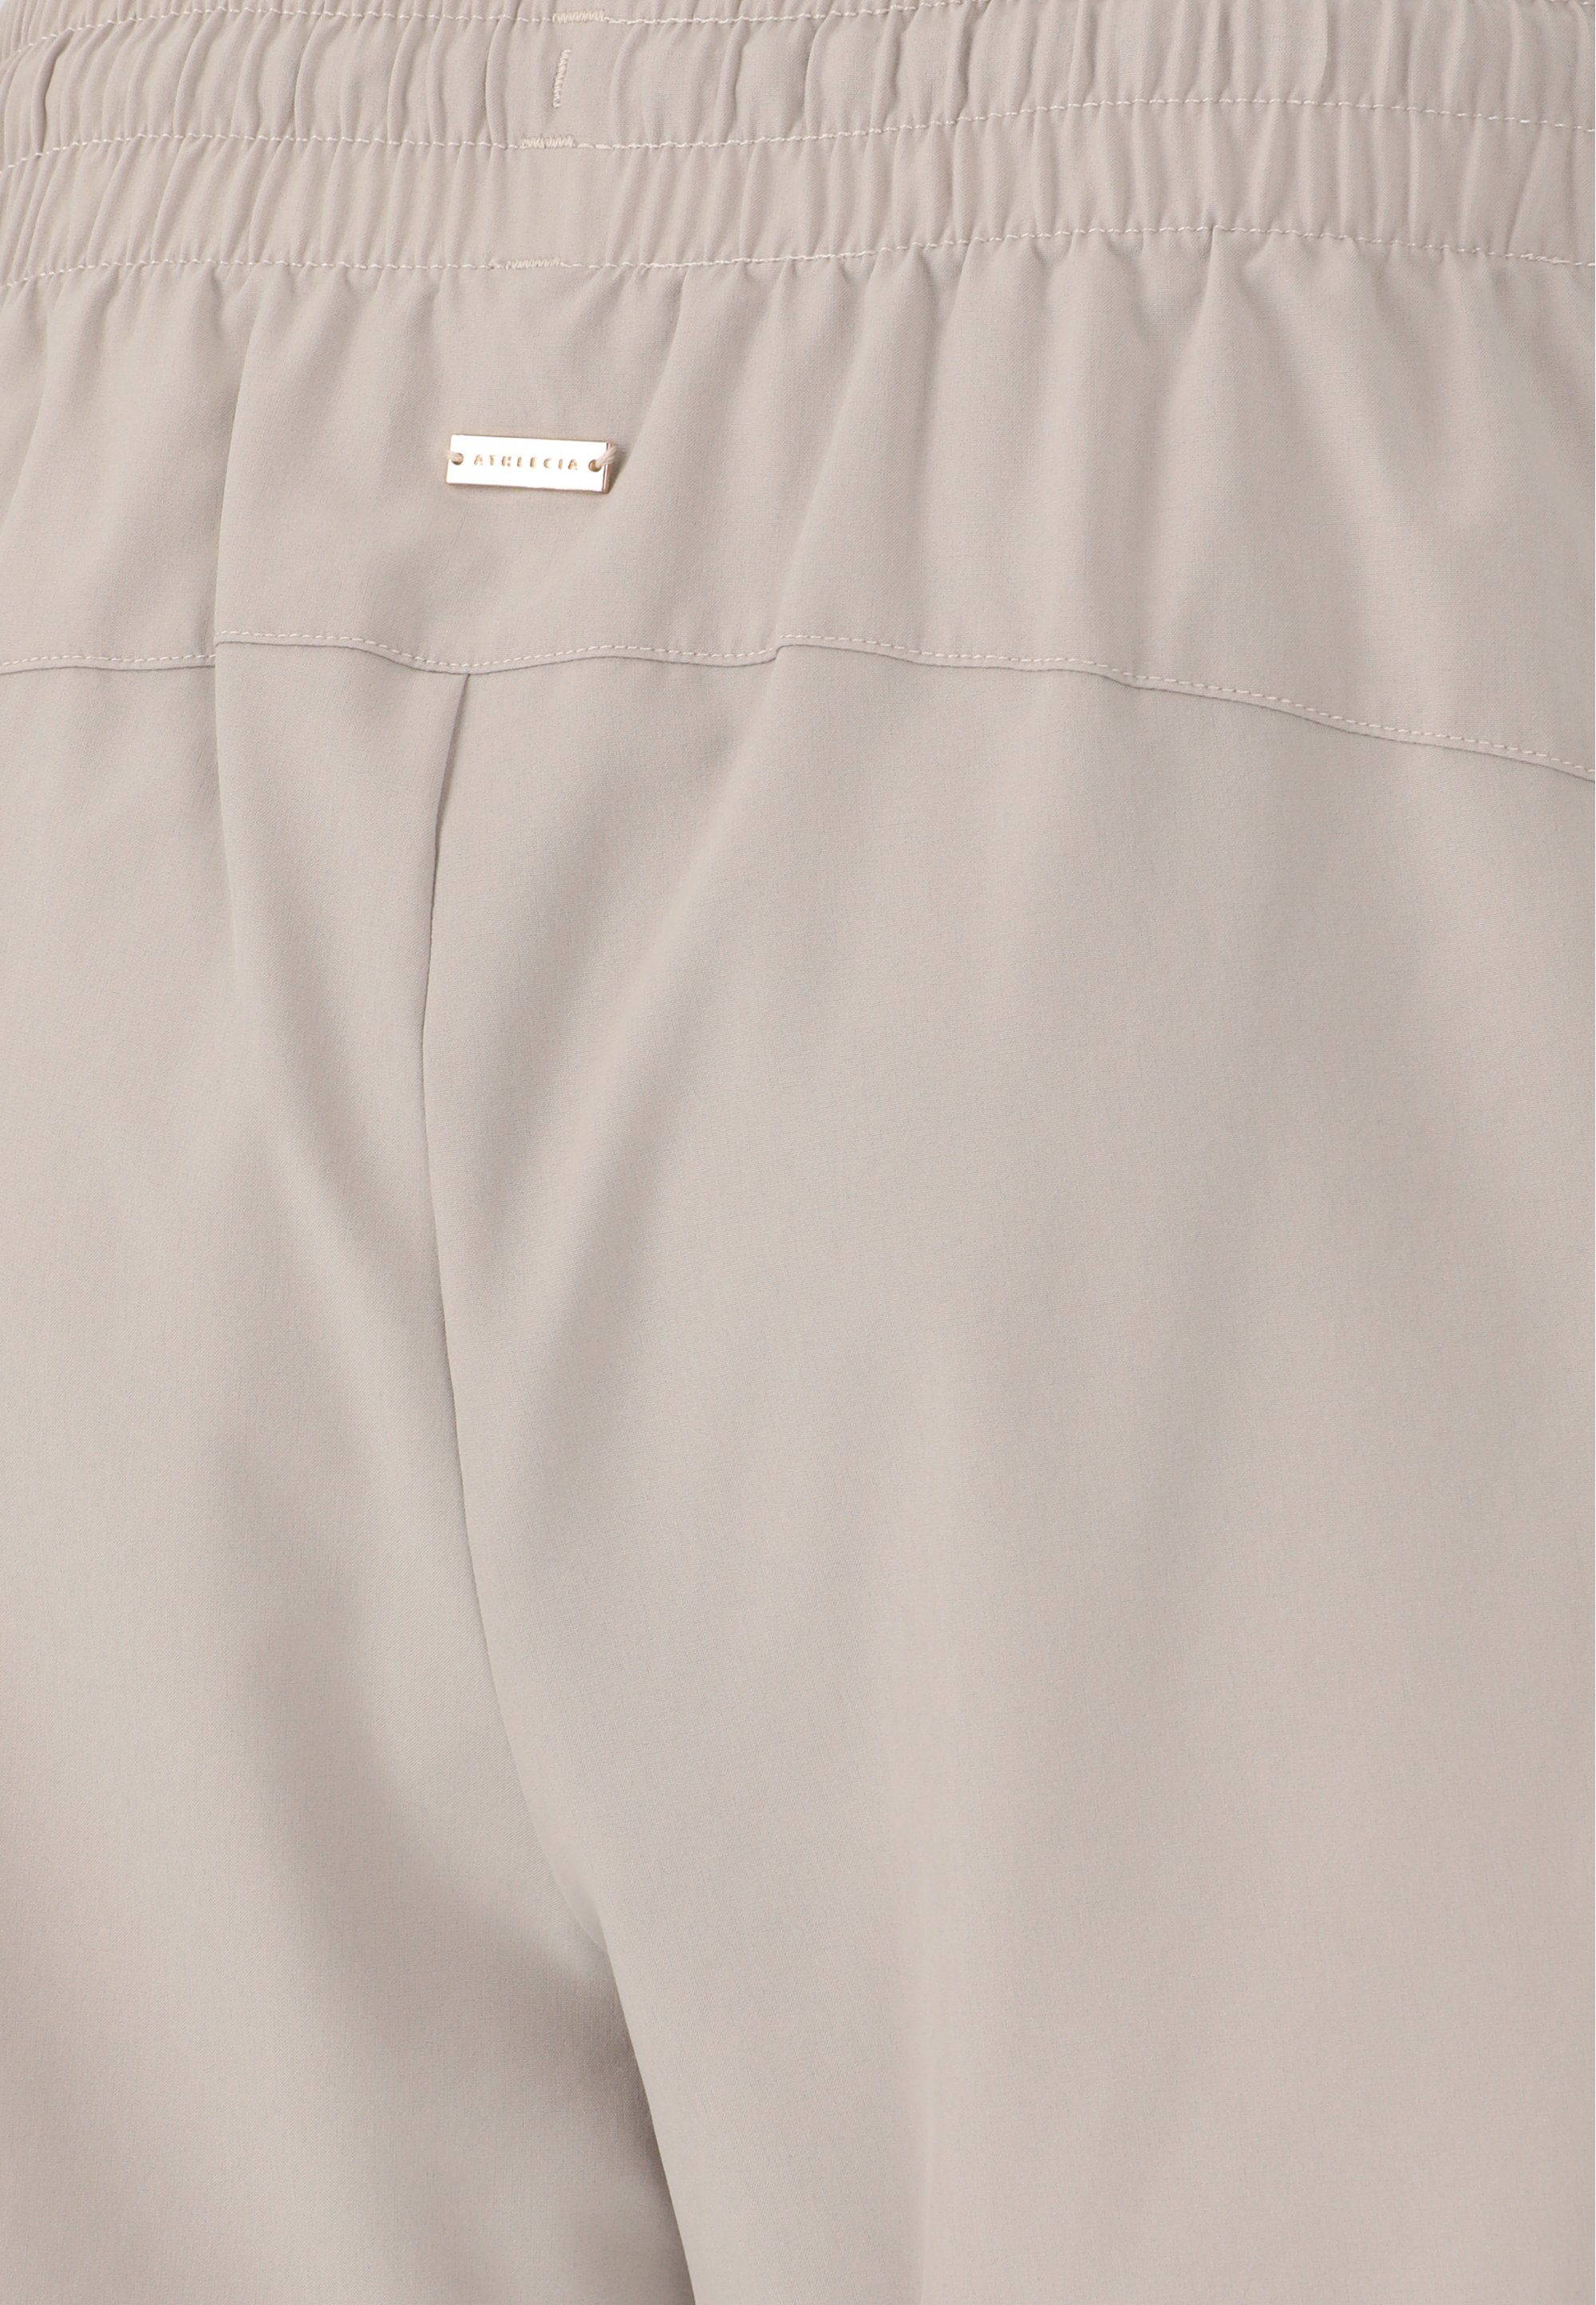 Timmie praktischen ATHLECIA Seitentaschen grau mit Shorts